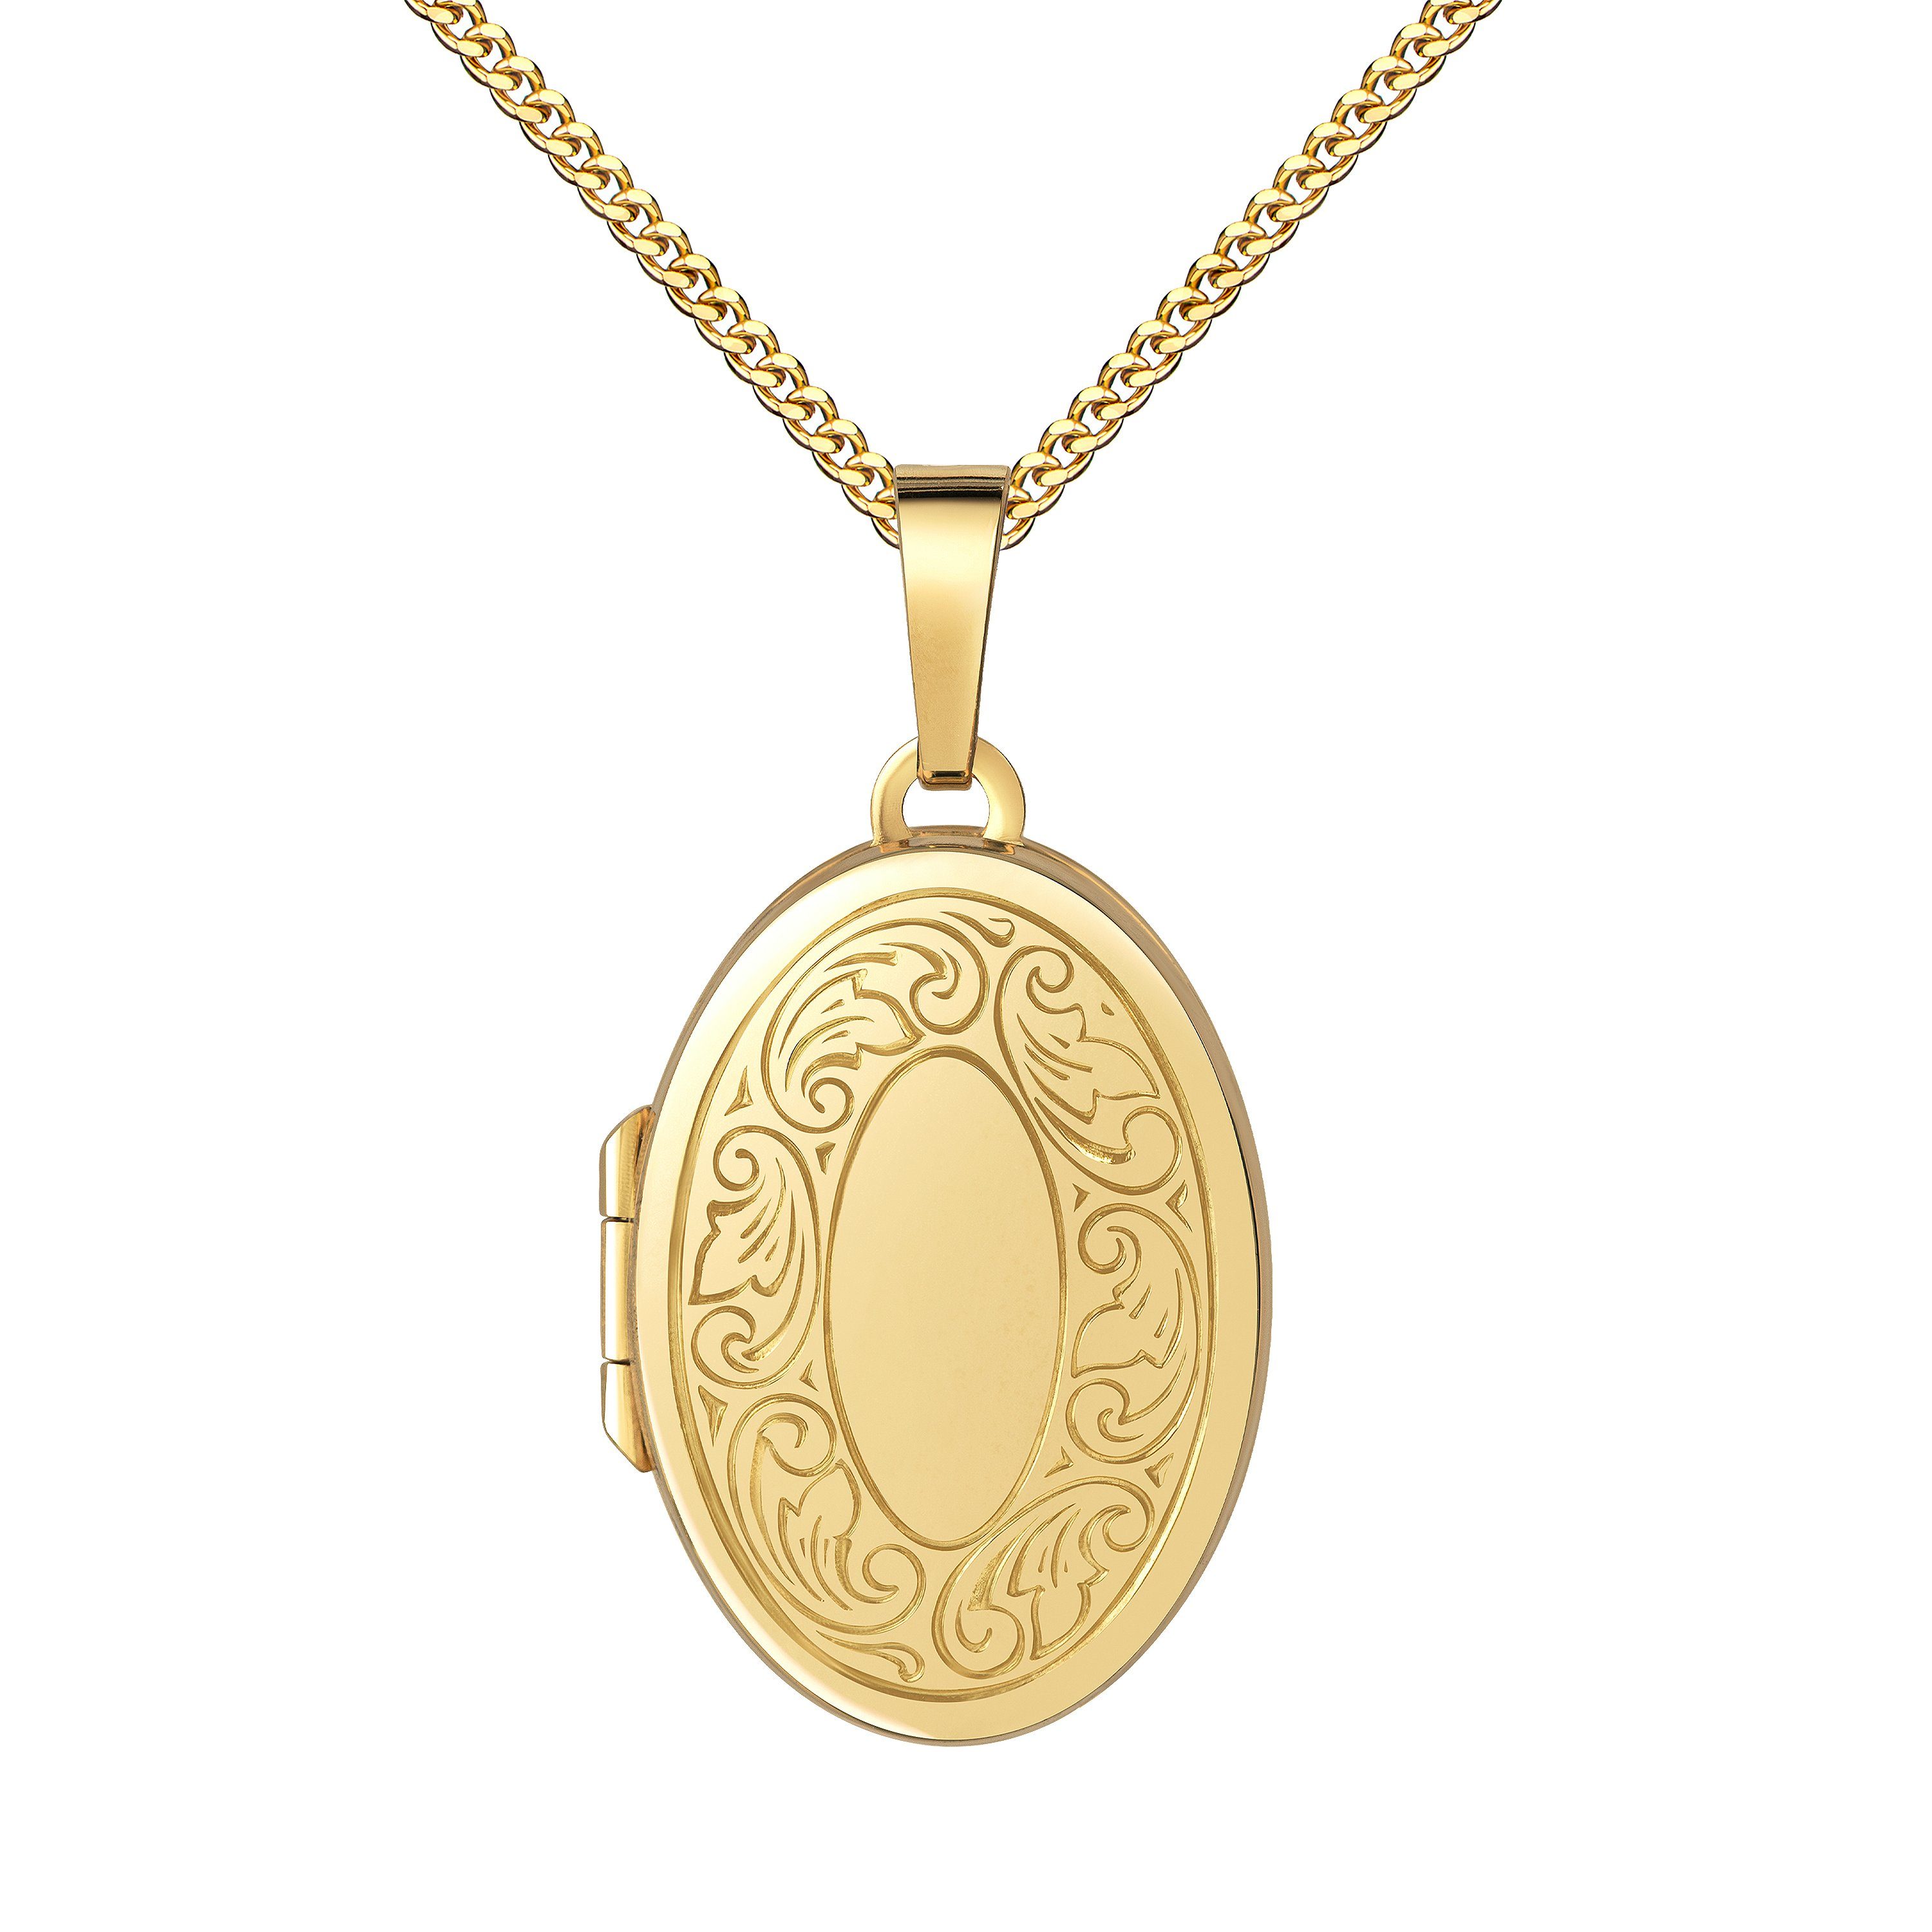 JEVELION Medallionanhänger 333 Gold Medaillon Ornament-Verzierung Anhänger zum Öffnen 2 Bilder (Fotoamulett, für Damen und Mädchen), Mit Kette vergoldet - Länge wählbar 36 - 70 cm oder ohne Kette.